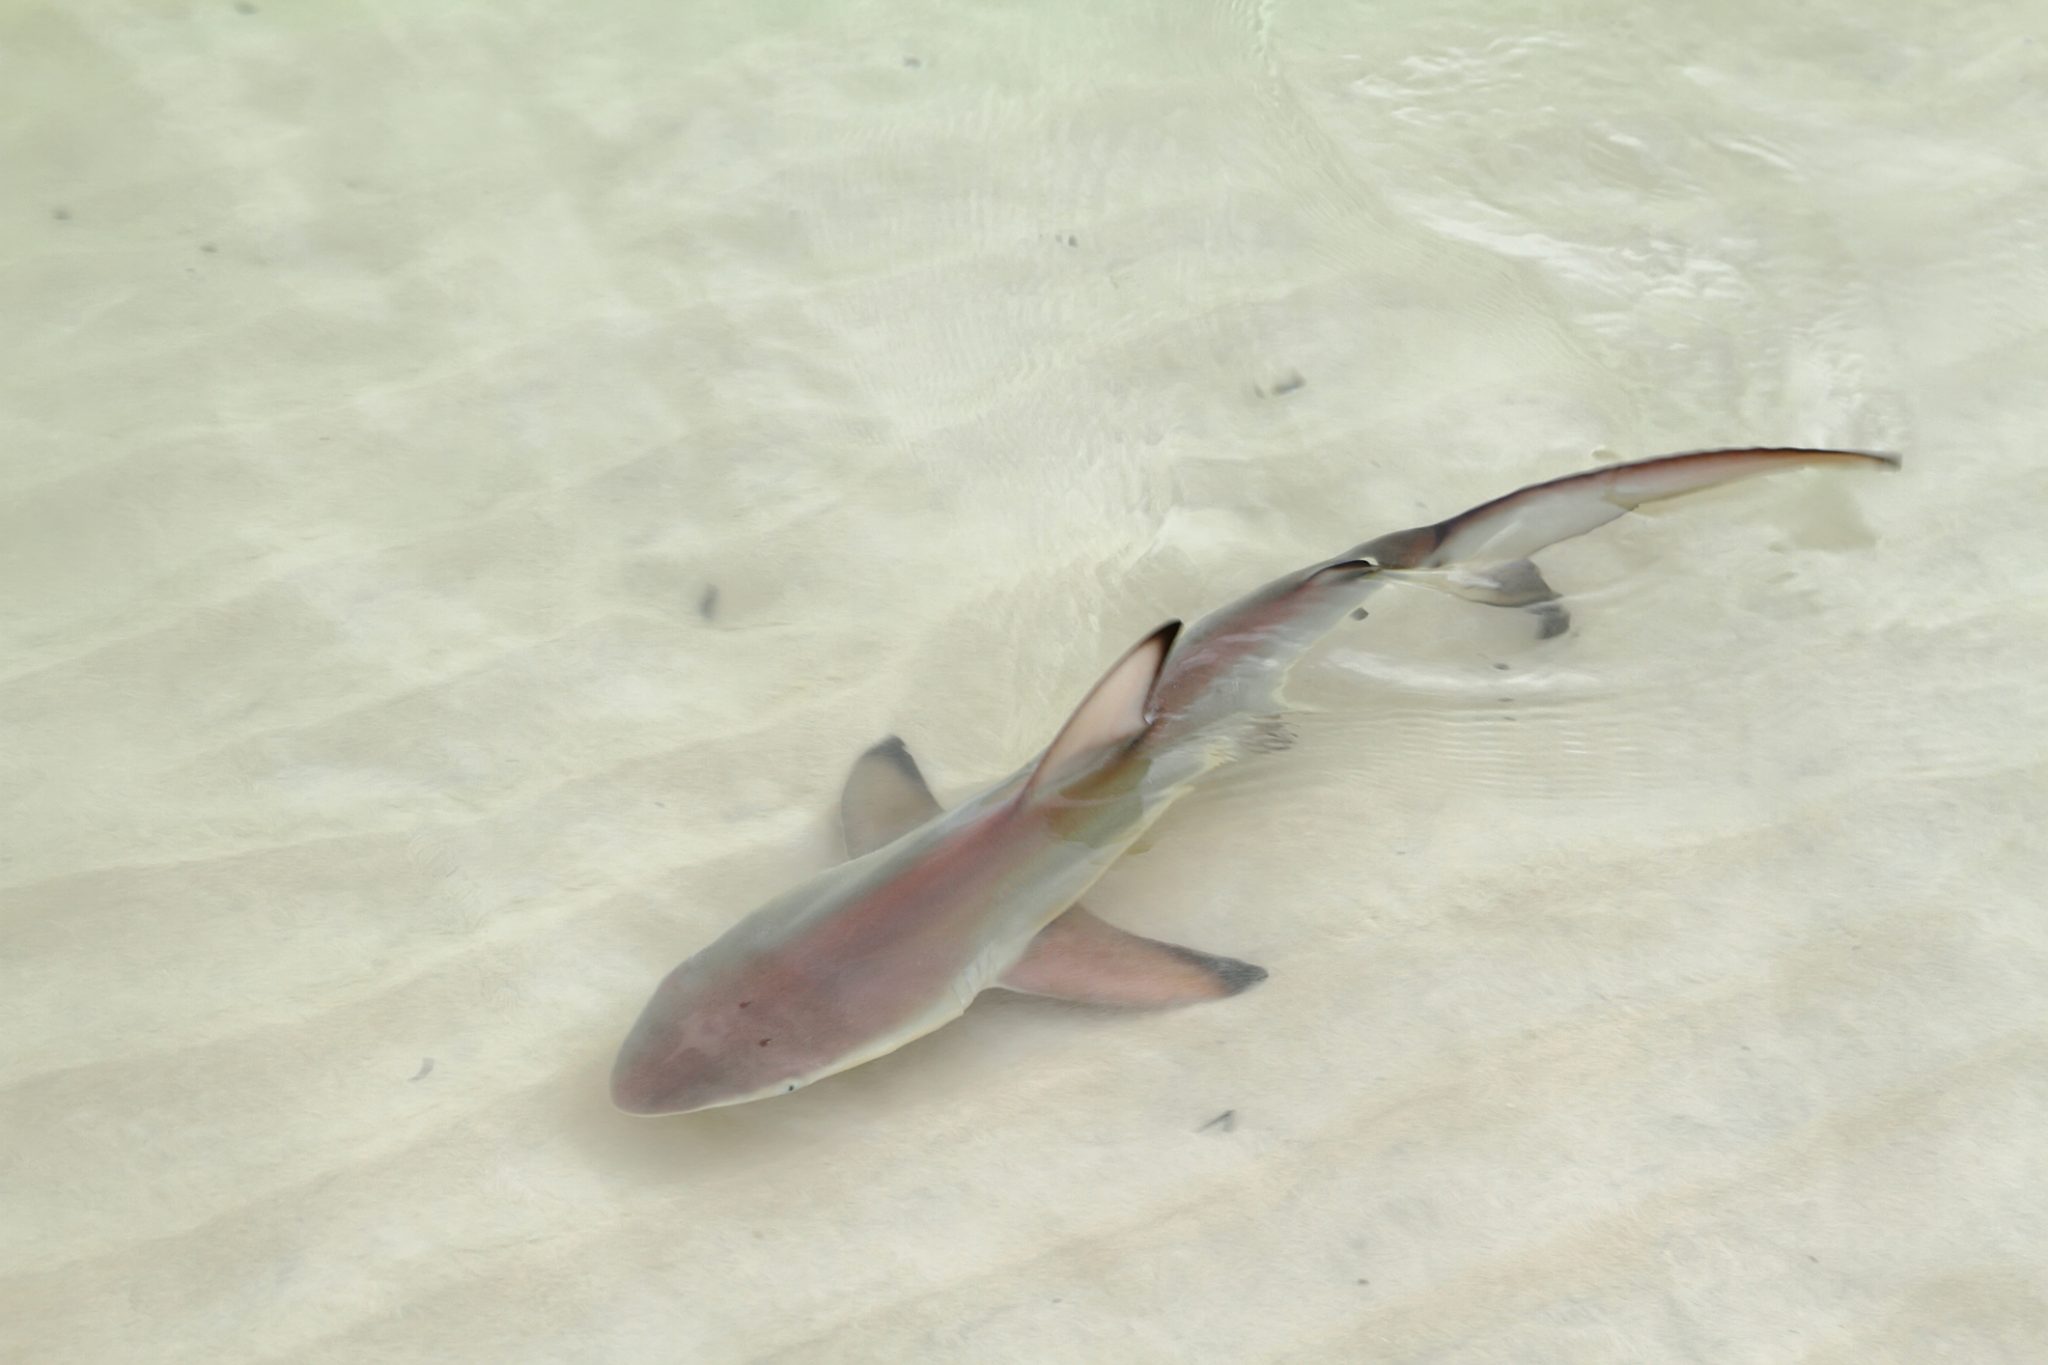 Σαλαμίνα: Καρχαρίας – μωρό «έκοβε βόλτες» σε παραλία – Η αντίδραση των λουόμενων